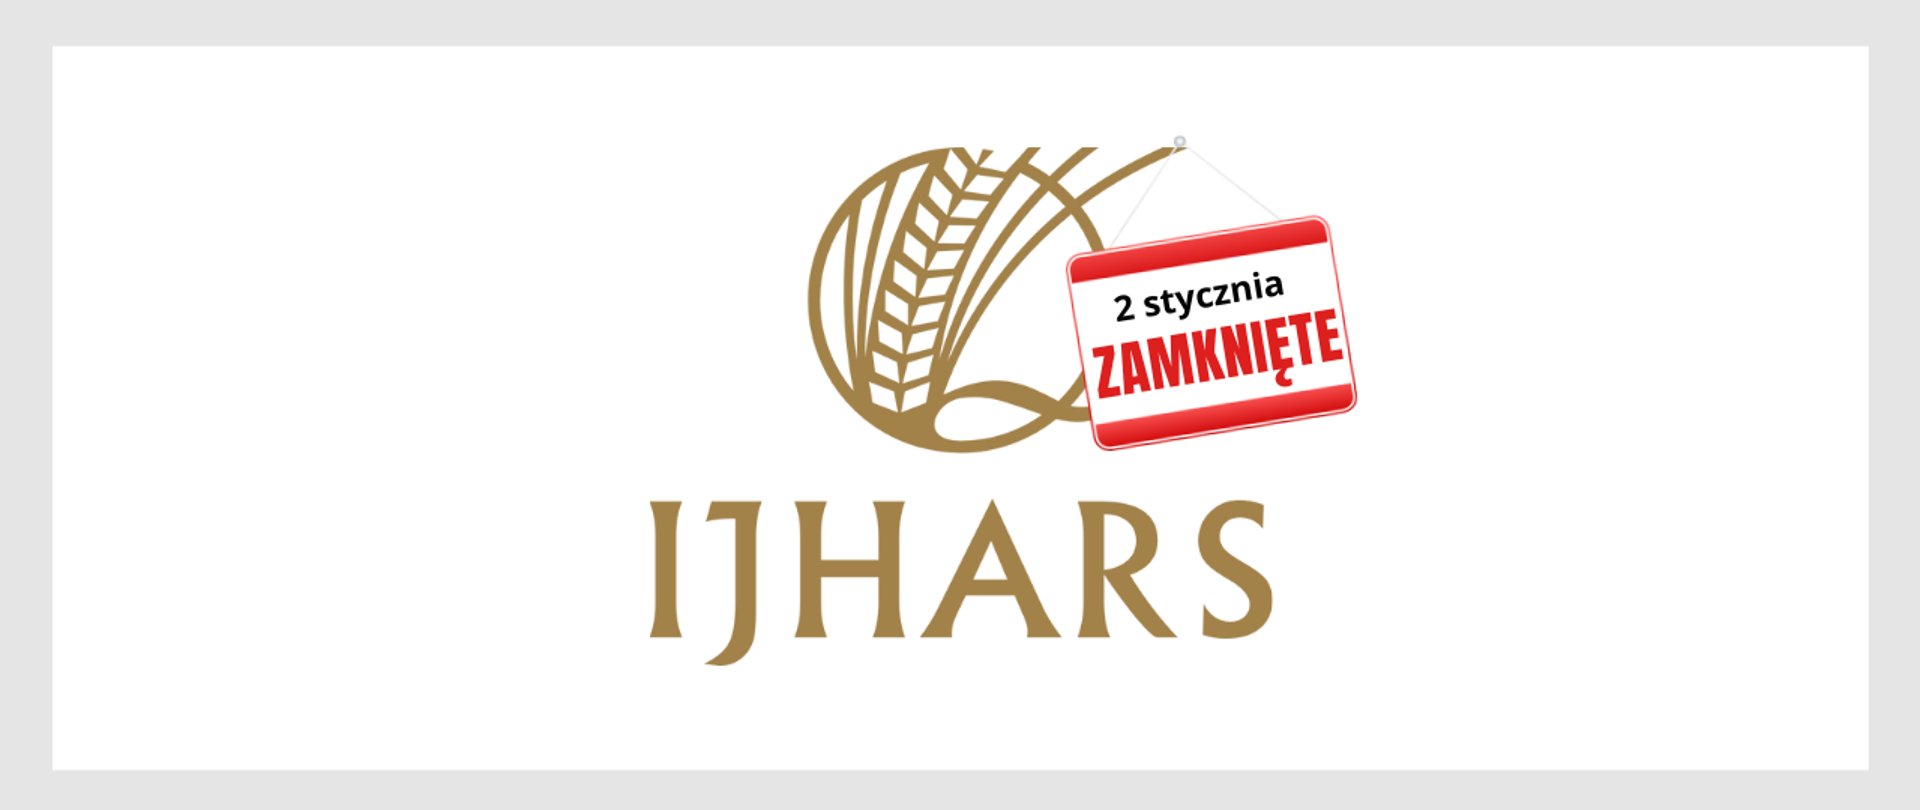 Logo IJHARS. Tabliczka z napisem: "2 stycznia zamknięte" zawieszona na logo.